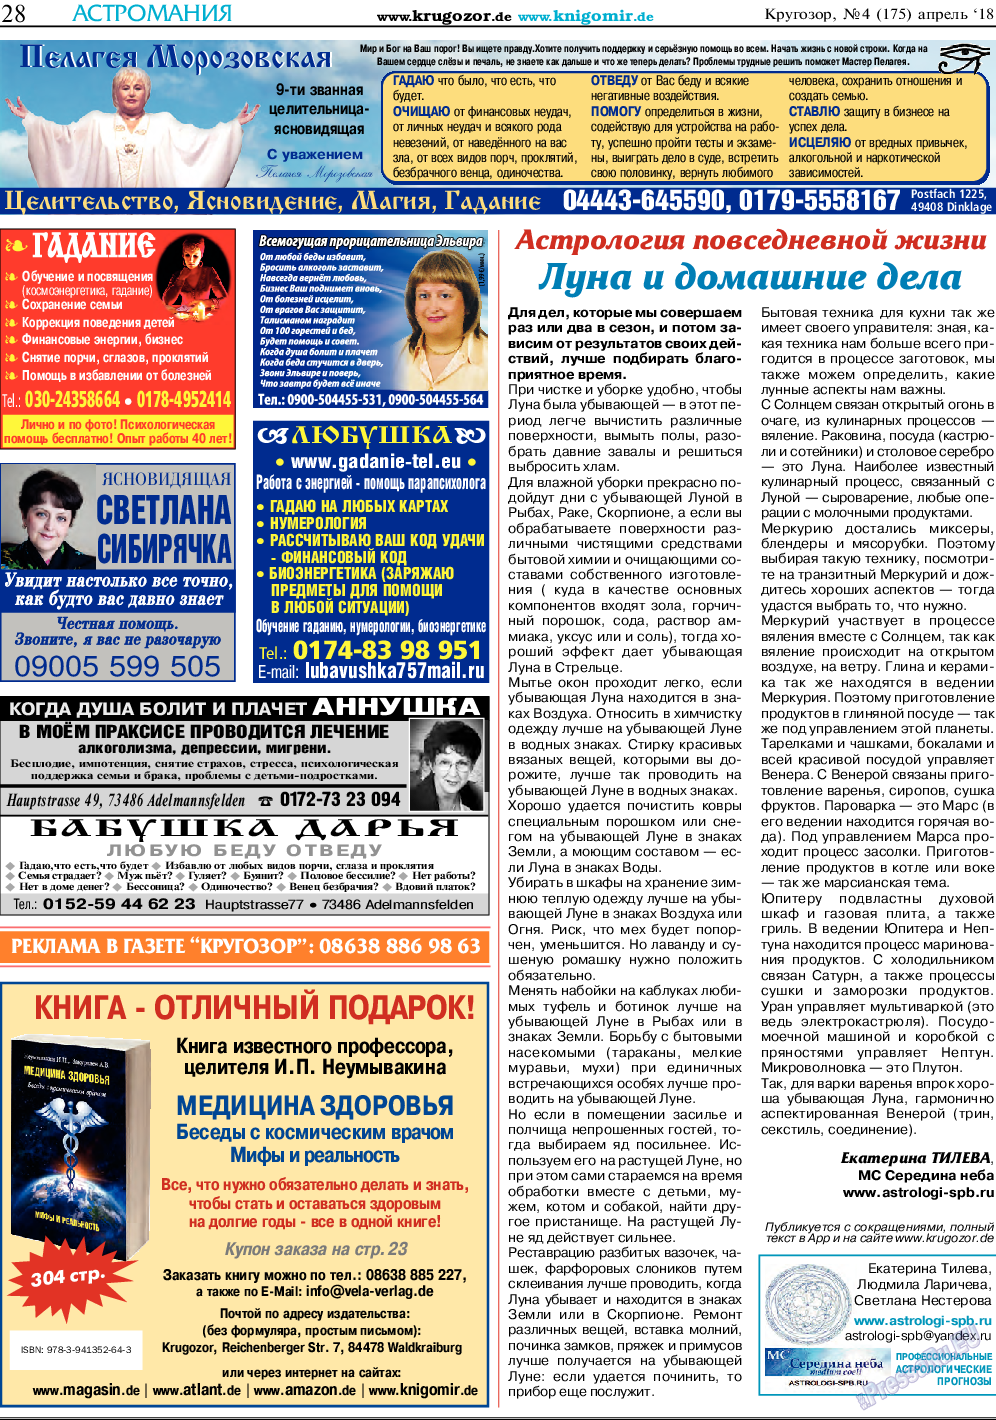 Кругозор, газета. 2018 №4 стр.28